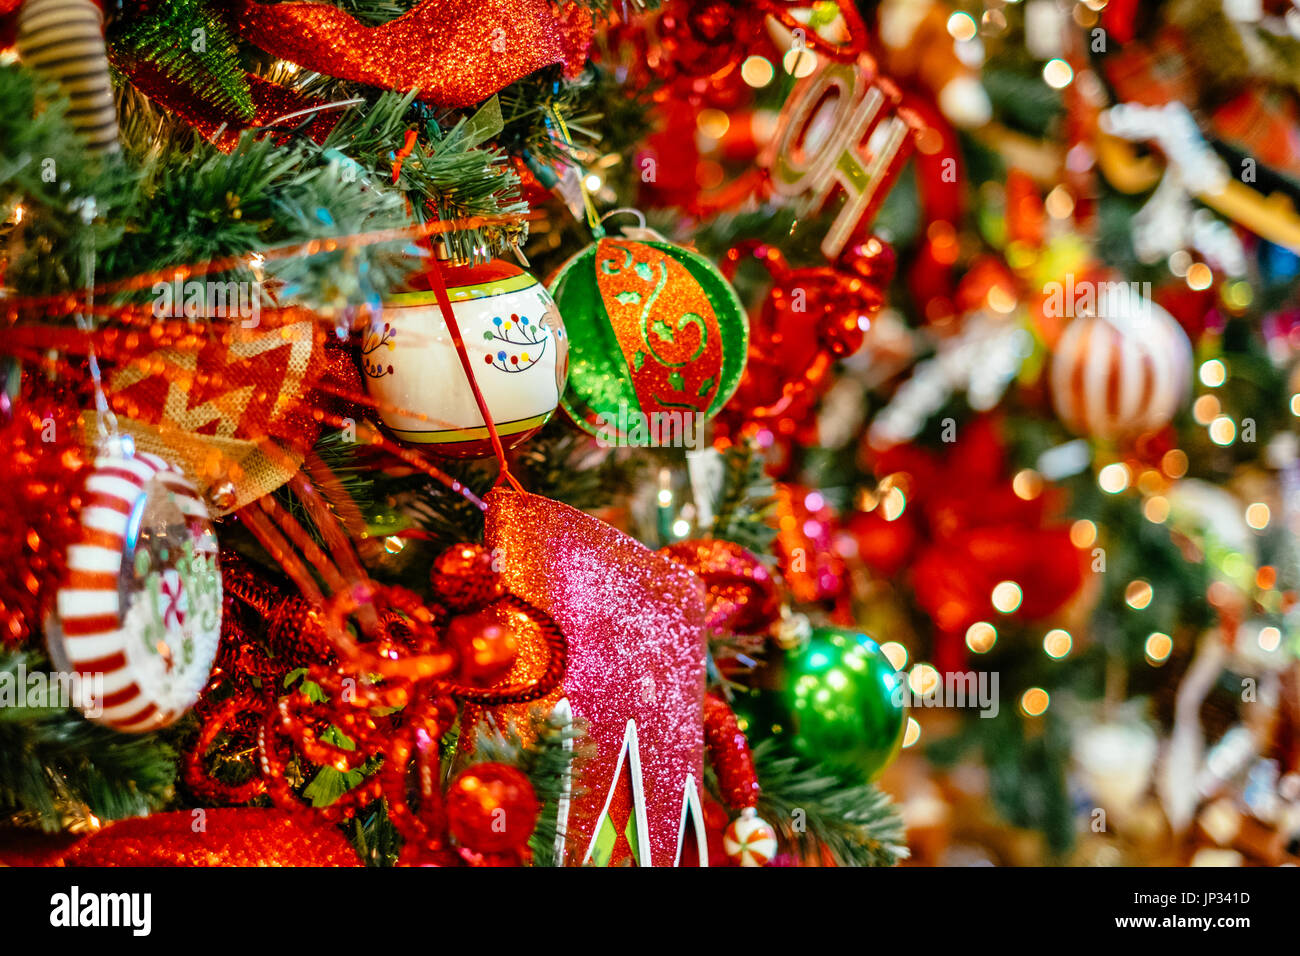 Christbaumschmuck und Lampen hängen an einem traditionellen Weihnachtsbaum während der Weihnachtszeit. Stockfoto